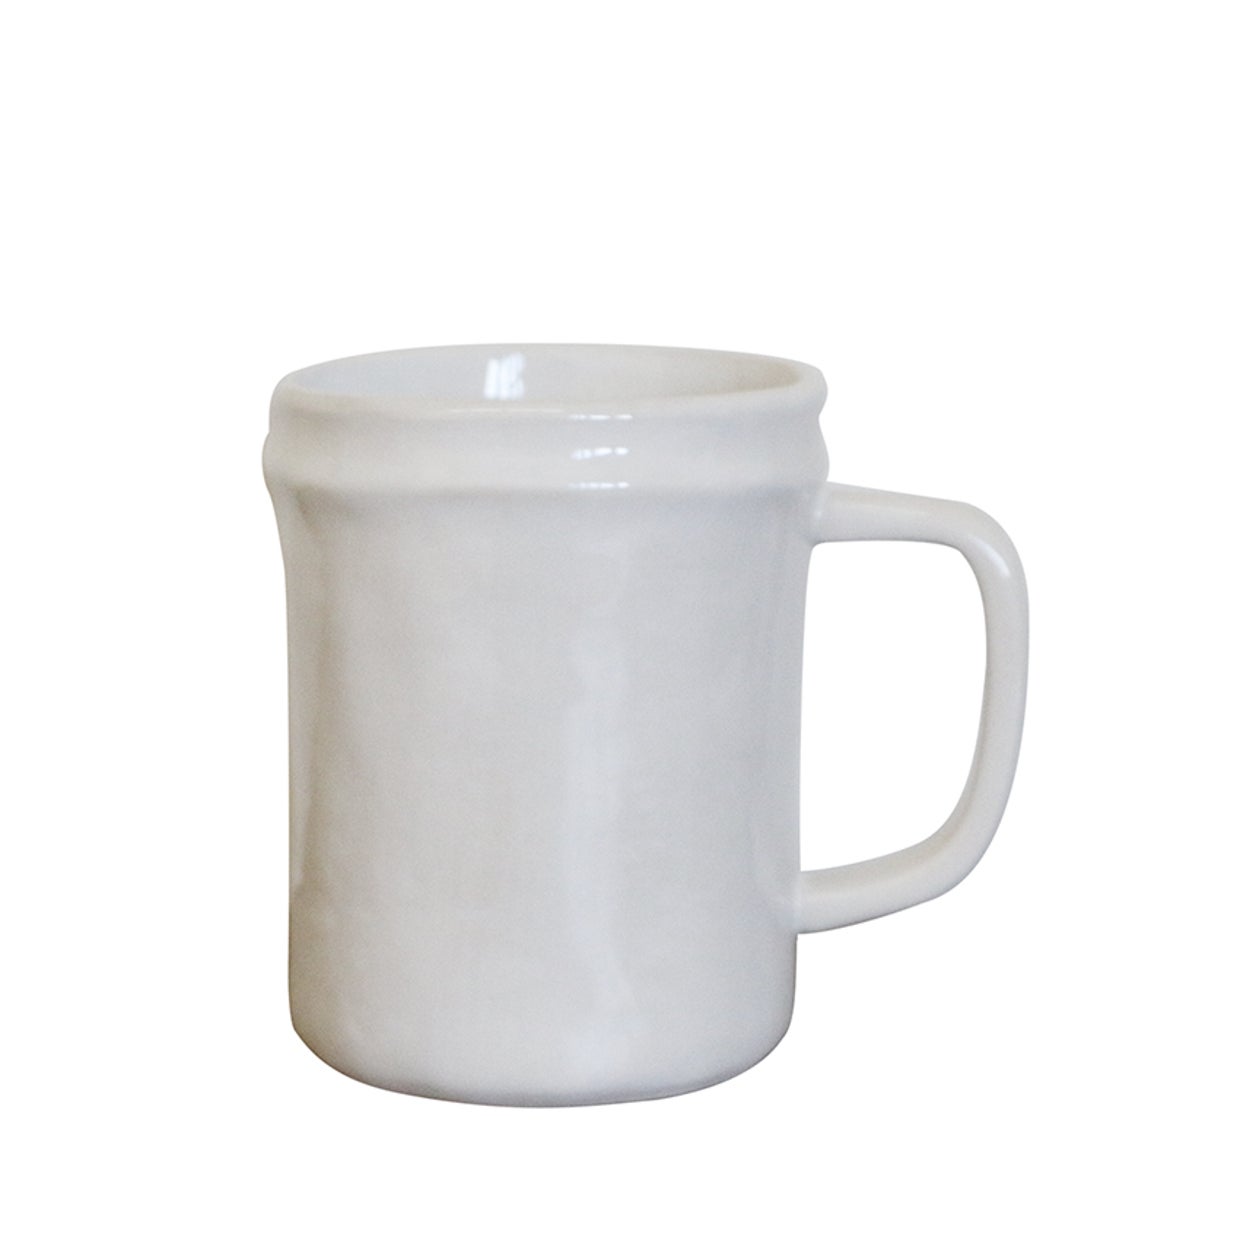 White stoneware mug with ridged detail around the lip